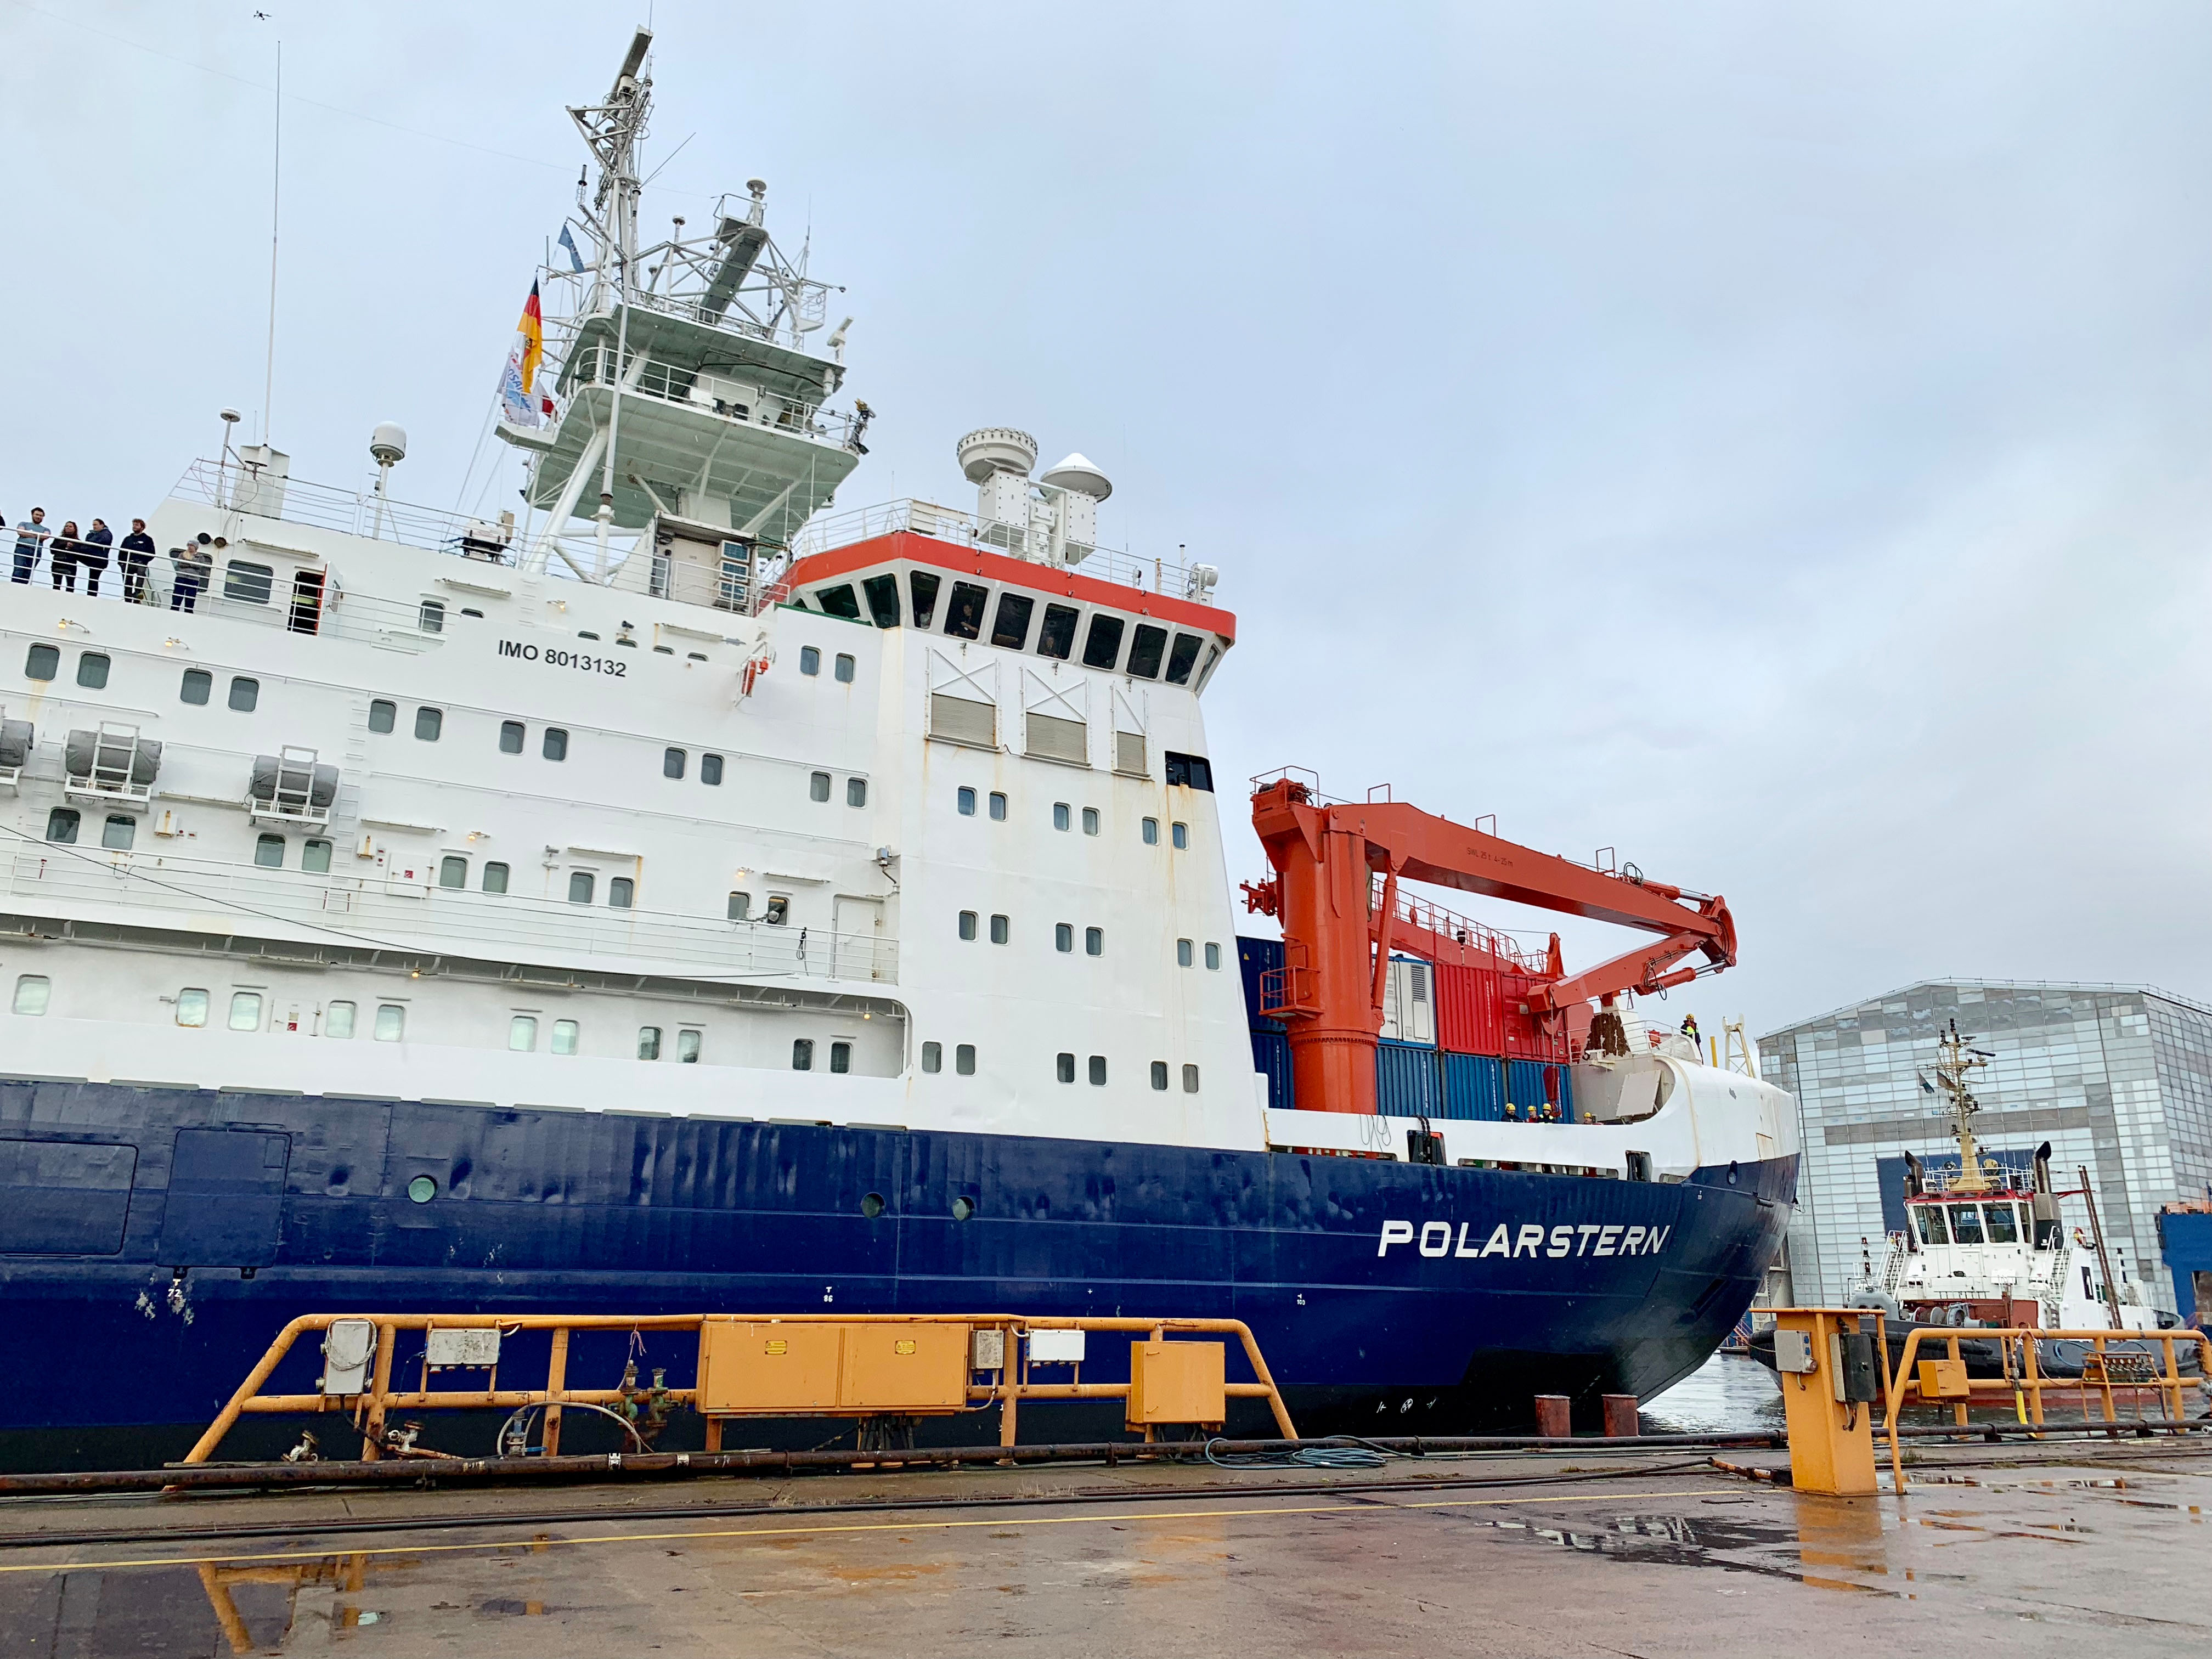 R/V Polarstern docks in Bremerhaven